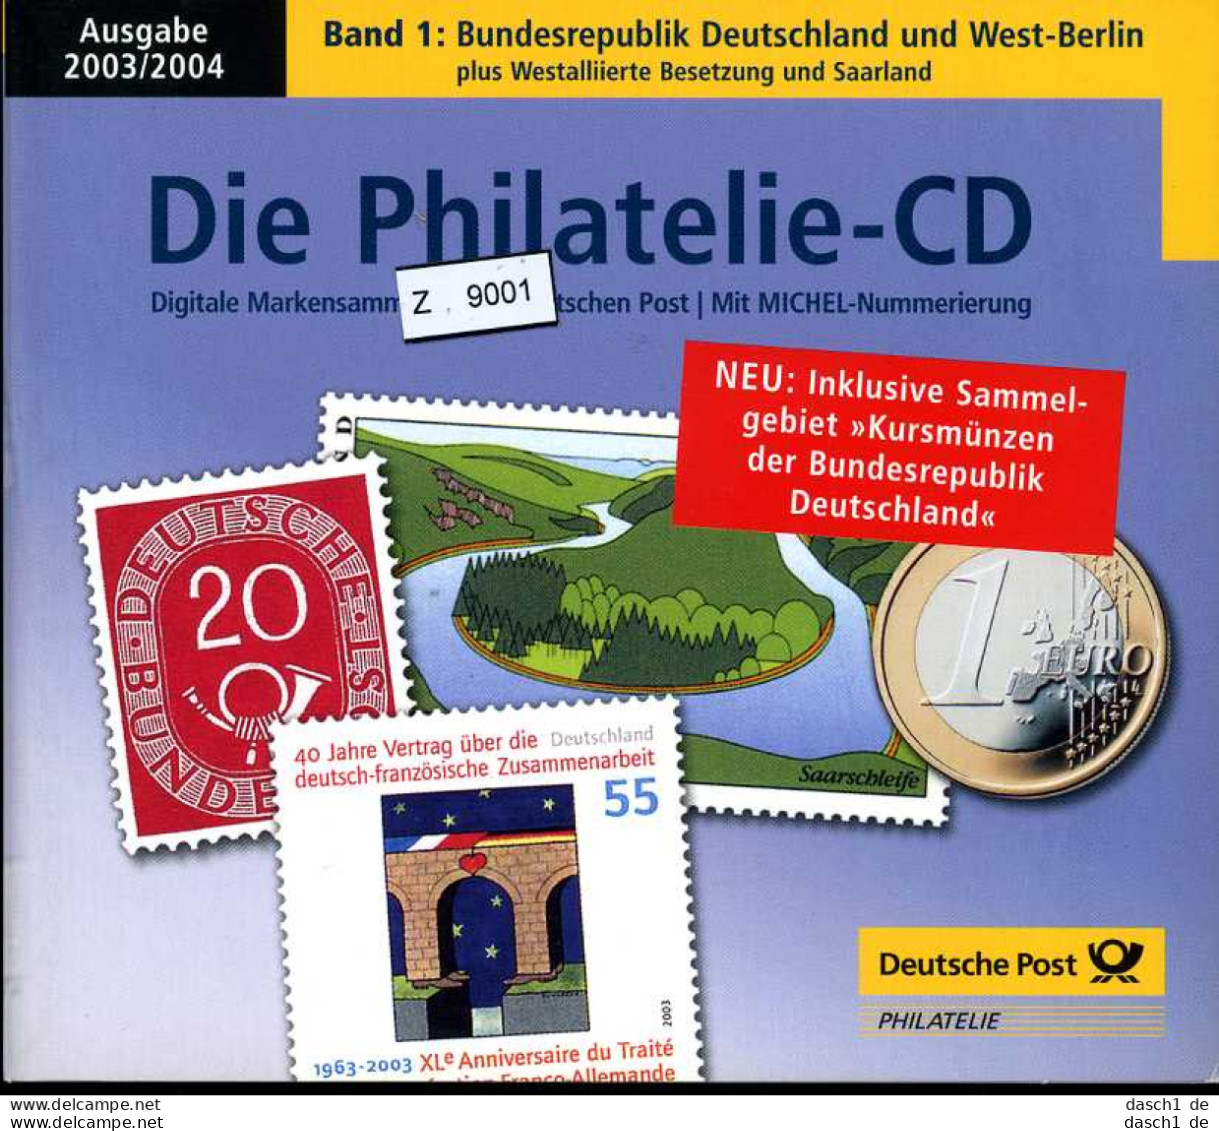 Bundesrepublik, - Berlin, 3 Lose U.a. Die Philatelie - CD 2001/2002, Band 1, BRD West-Berlin - German